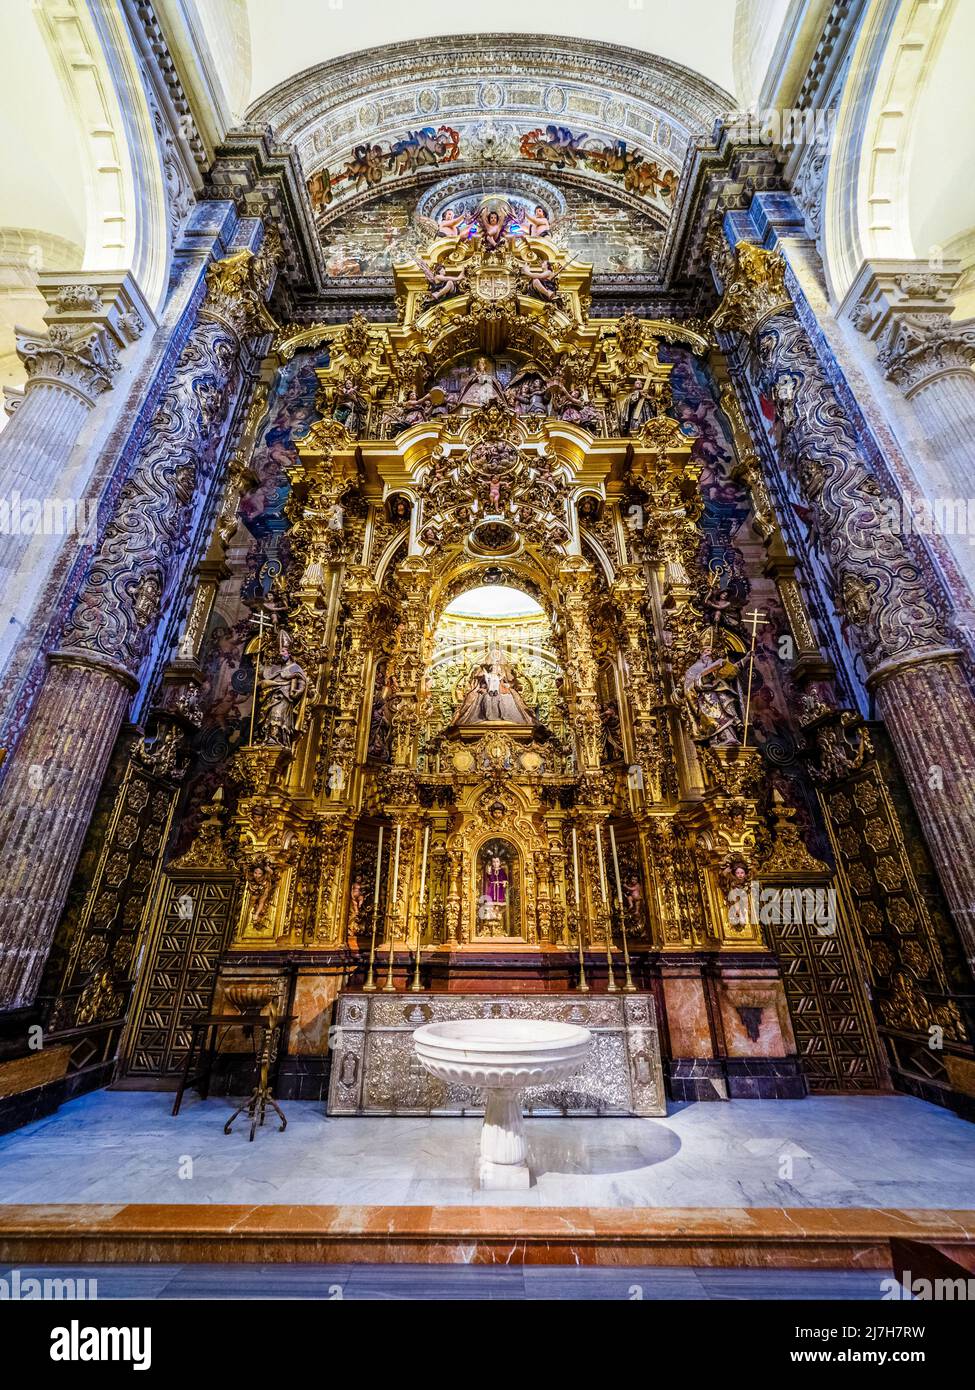 Altarbild der Jungfrau der Wasser (Virgen de las Aguas) in der Stiftskirche des Göttlichen Heilands - Sevilla, Spanien Stockfoto